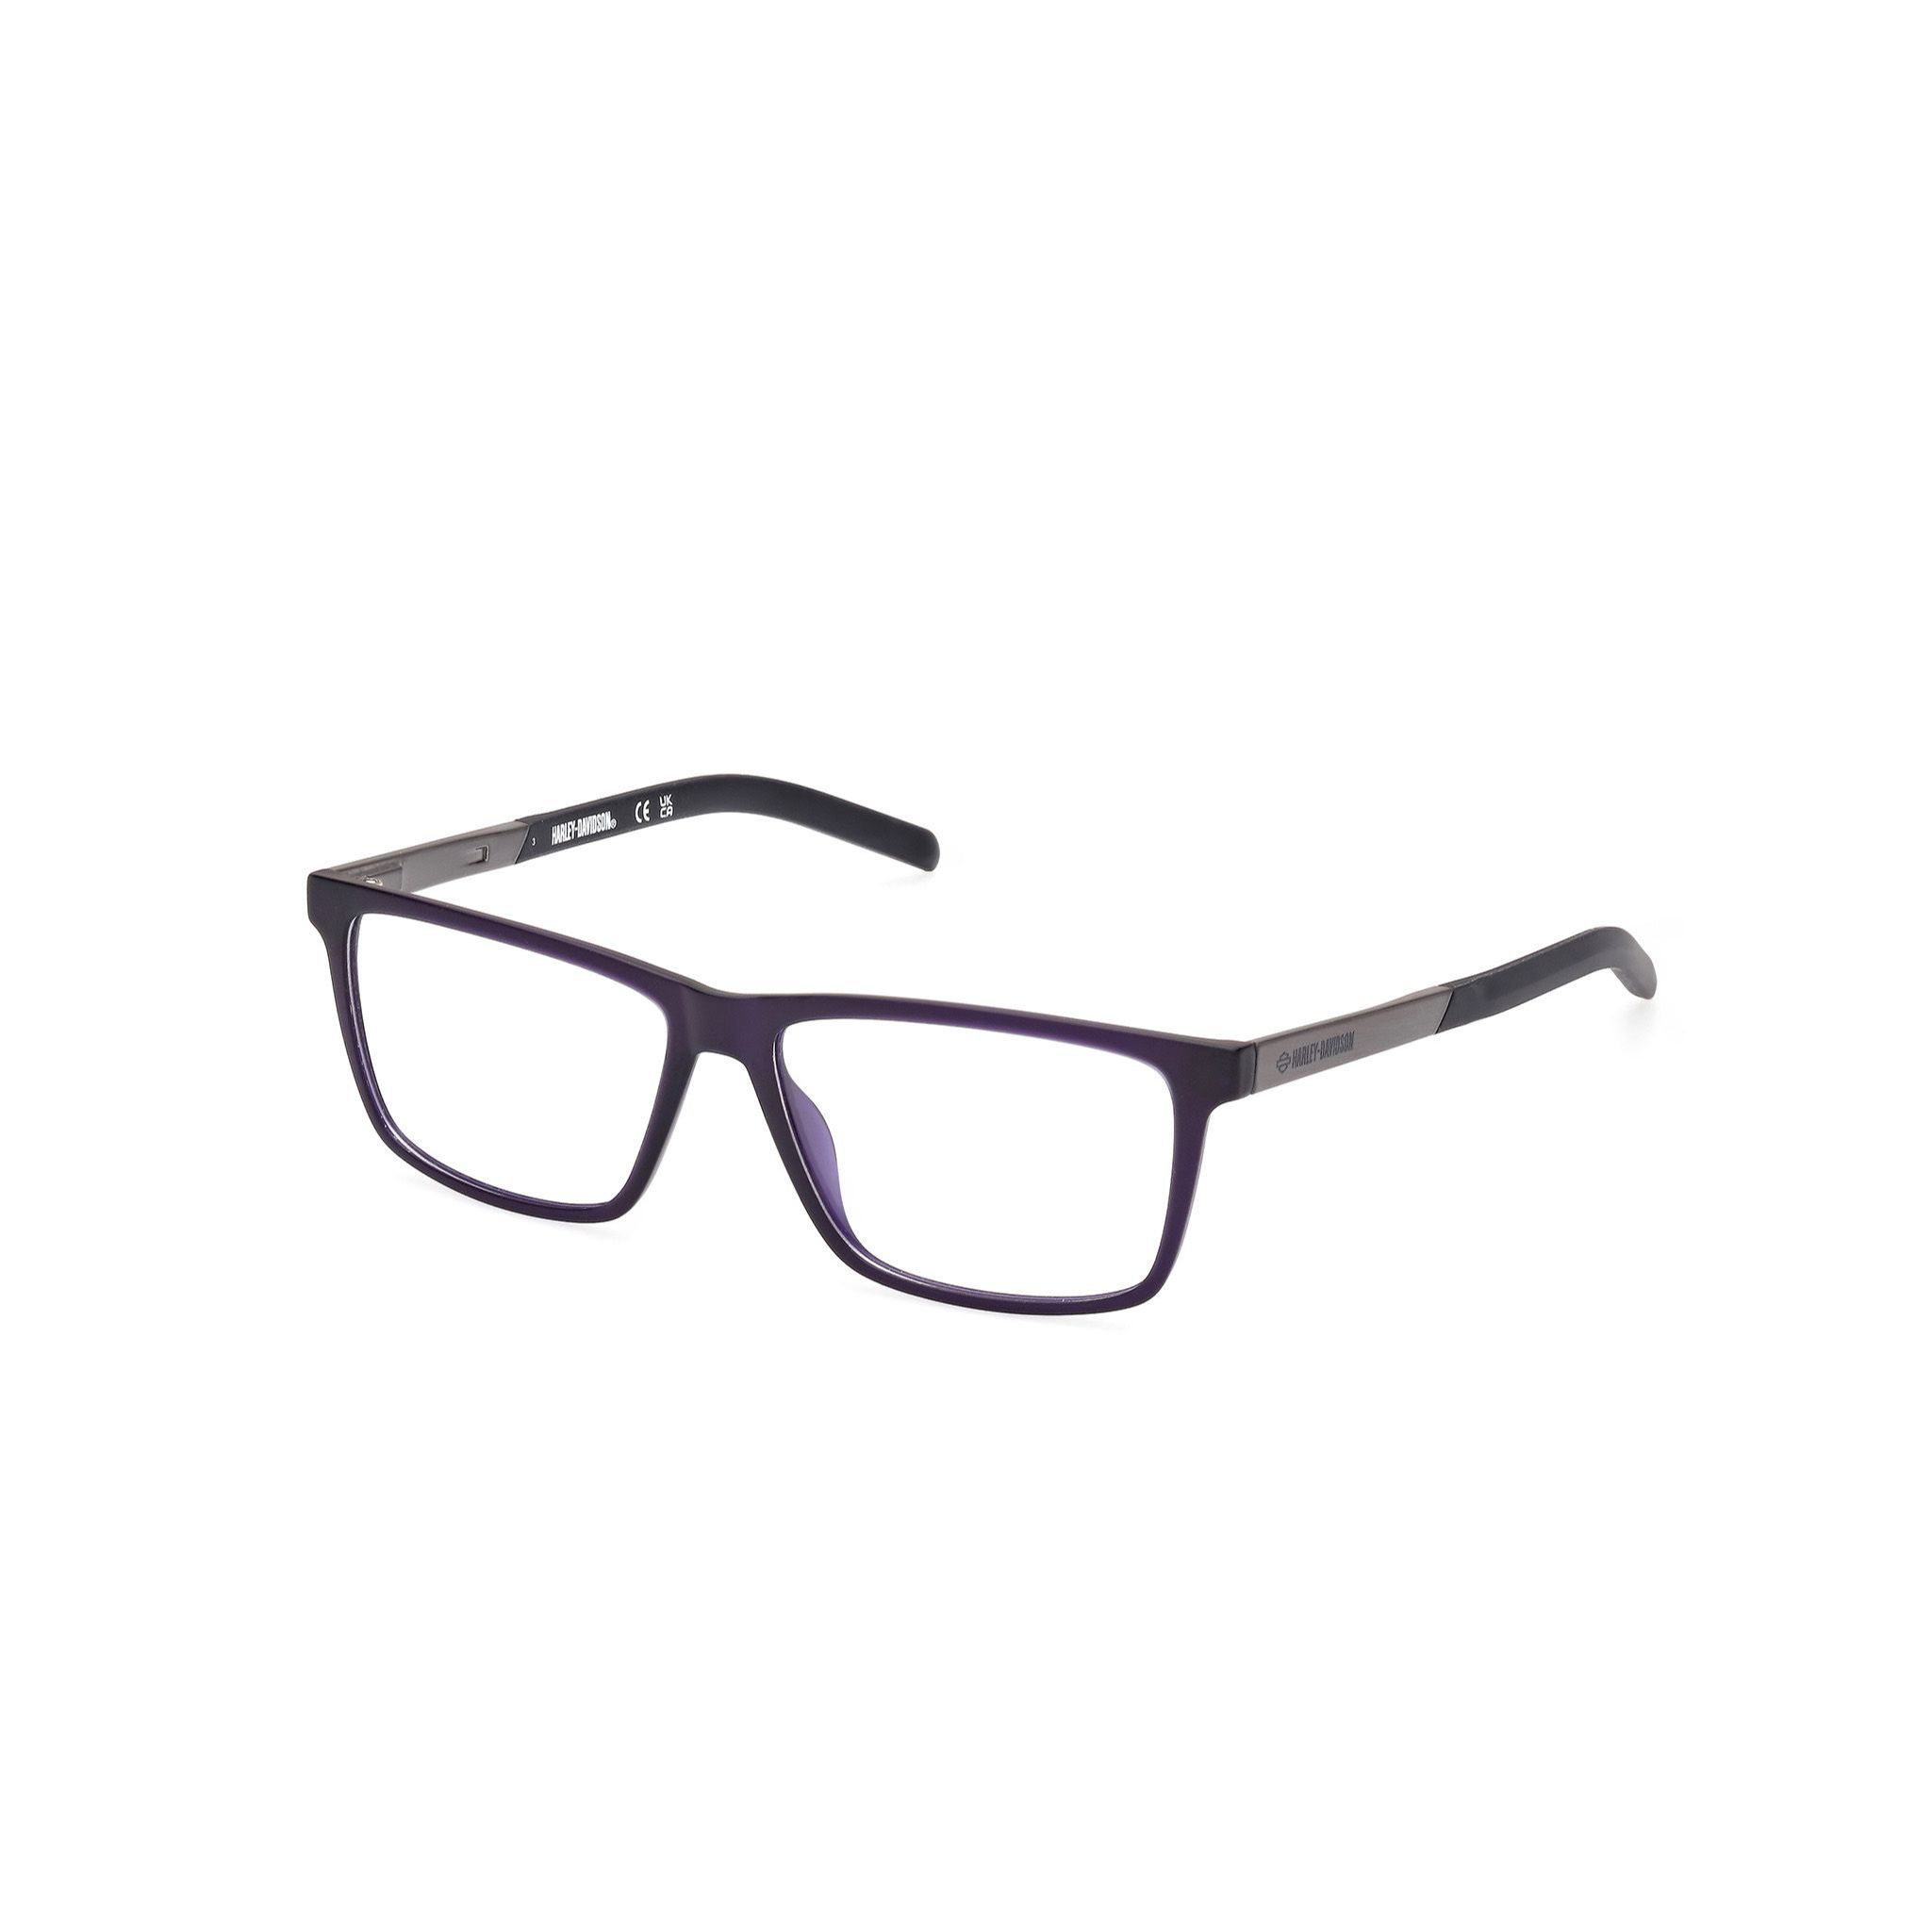 HD00013 Rectangle Eyeglasses 91 - size  53